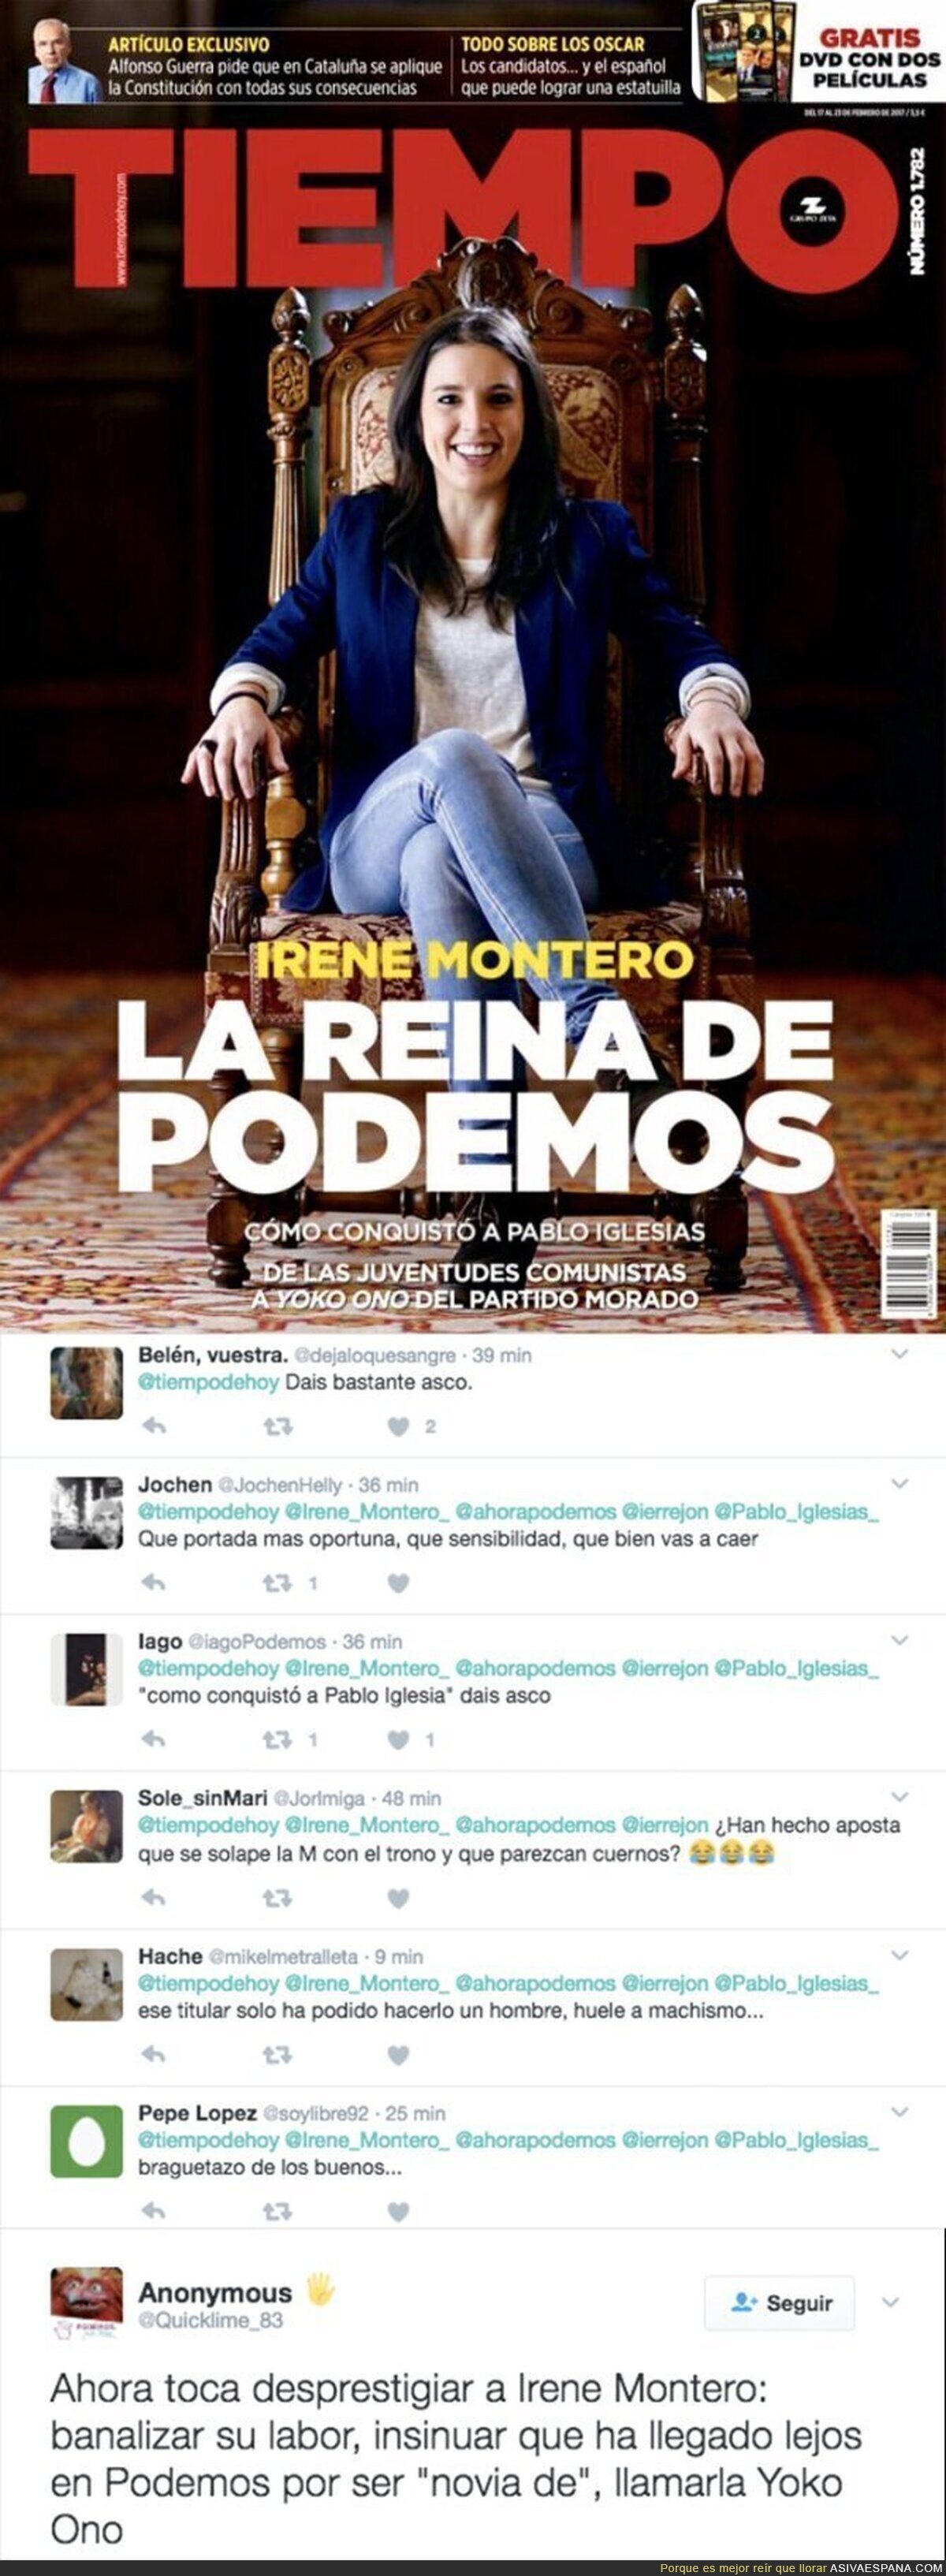 El machismo repugnante de la revista TIEMPO que califica así a Irene Montero (Podemos)